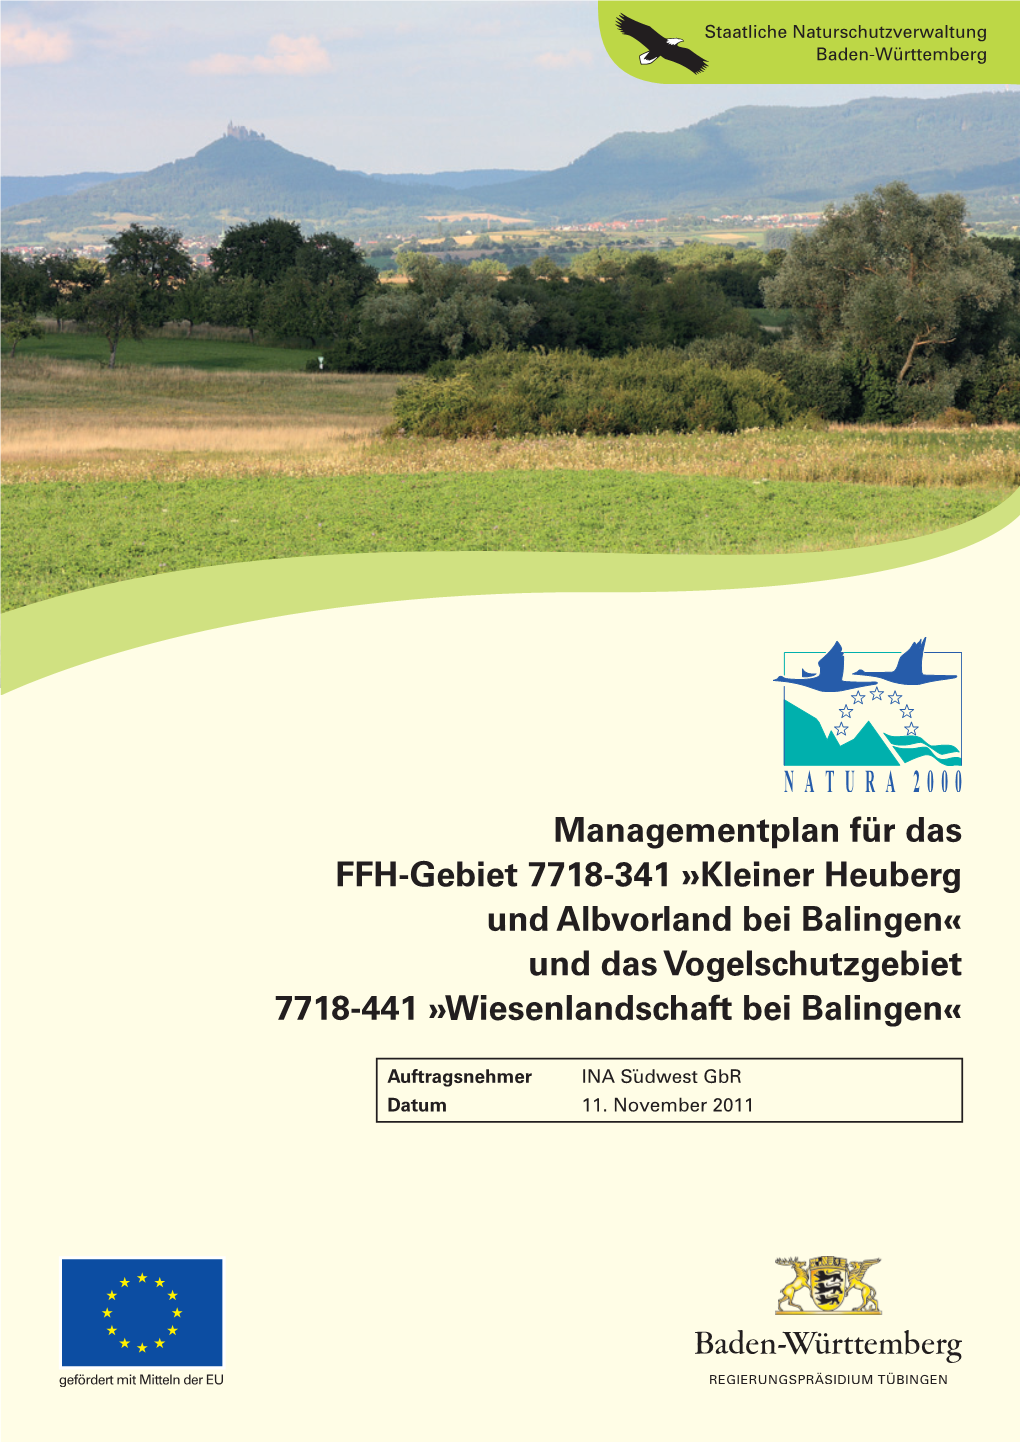 Managementplan Für Das FFH-Gebiet 7718-341 »Kleiner Heuberg Und Albvorland Bei Balingen« Und Das Vogelschutzgebiet 7718-441 »Wiesenlandschaft Bei Balingen«